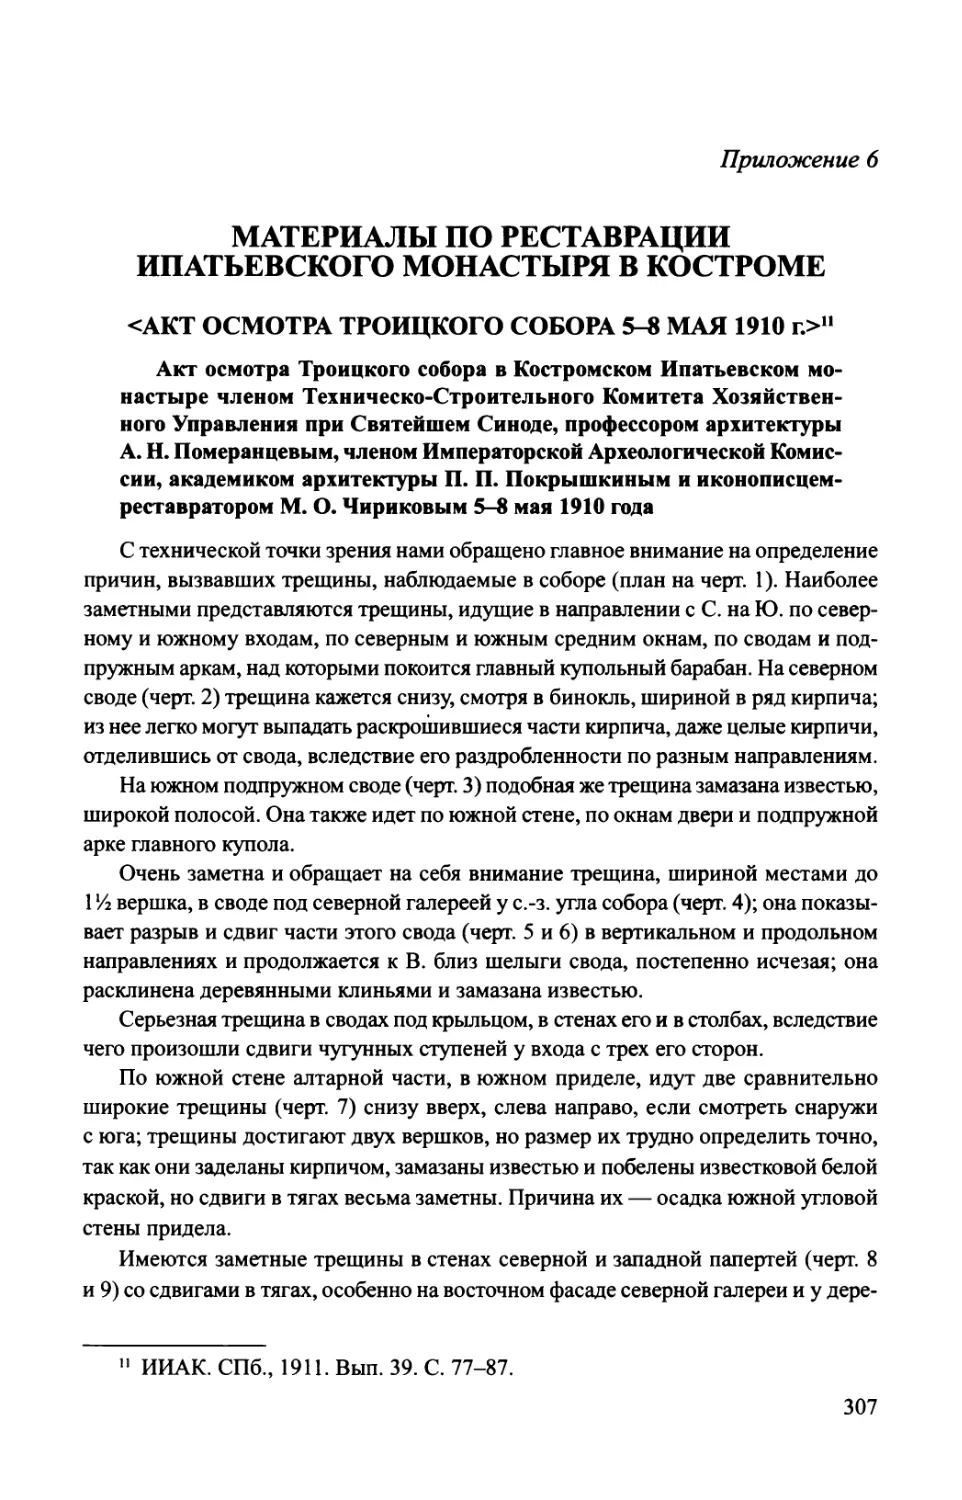 Приложение 6. Материалы по реставрации Ипатьевского монастыря в Костроме